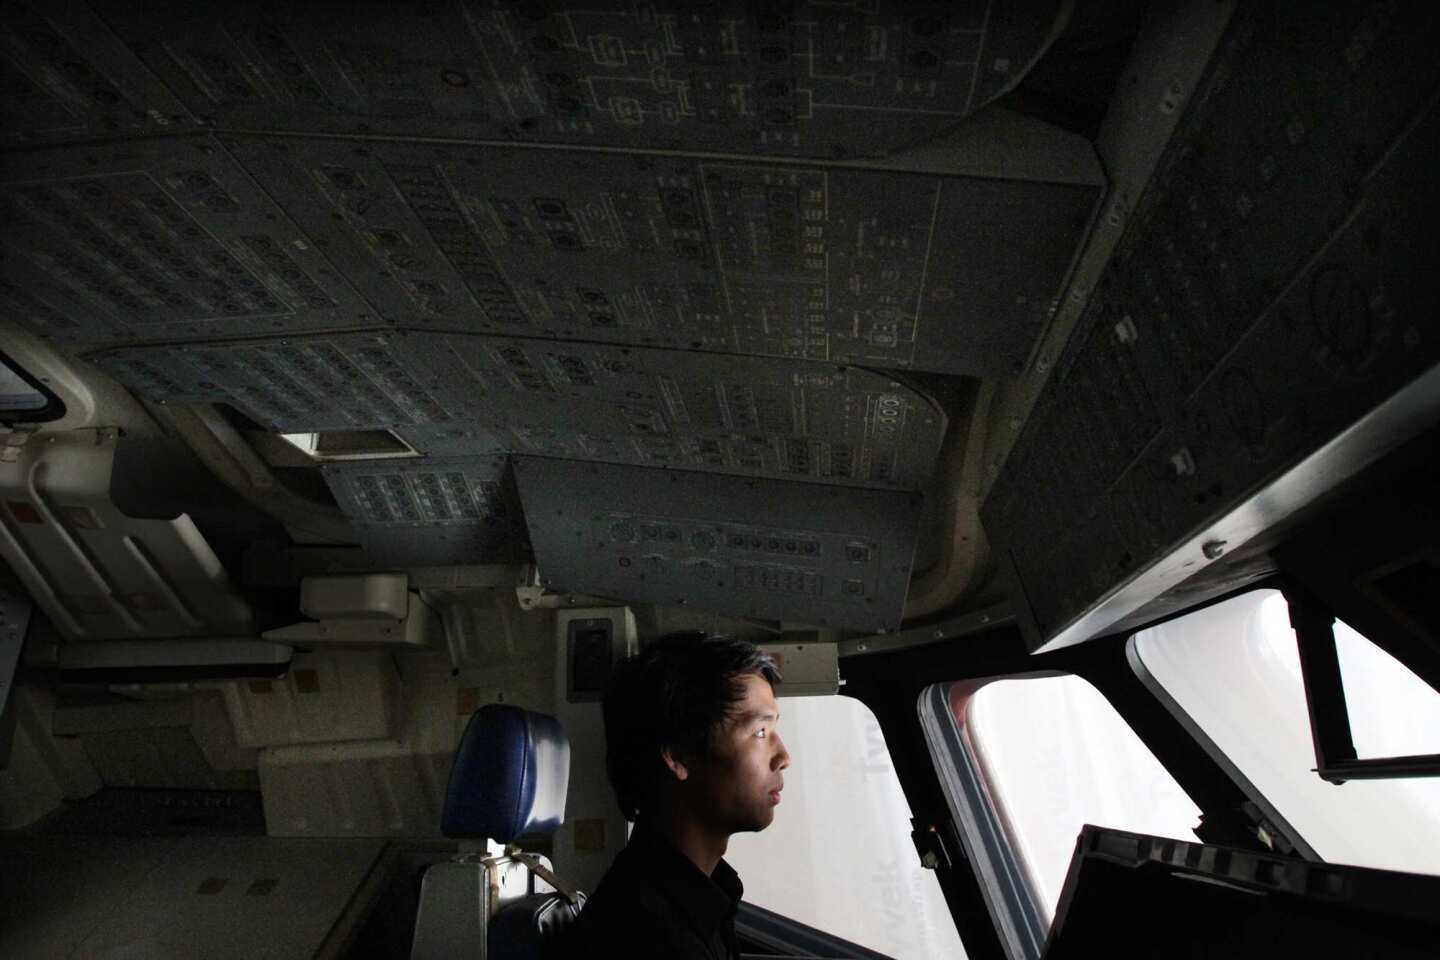 Space shuttle mock-up cockpit